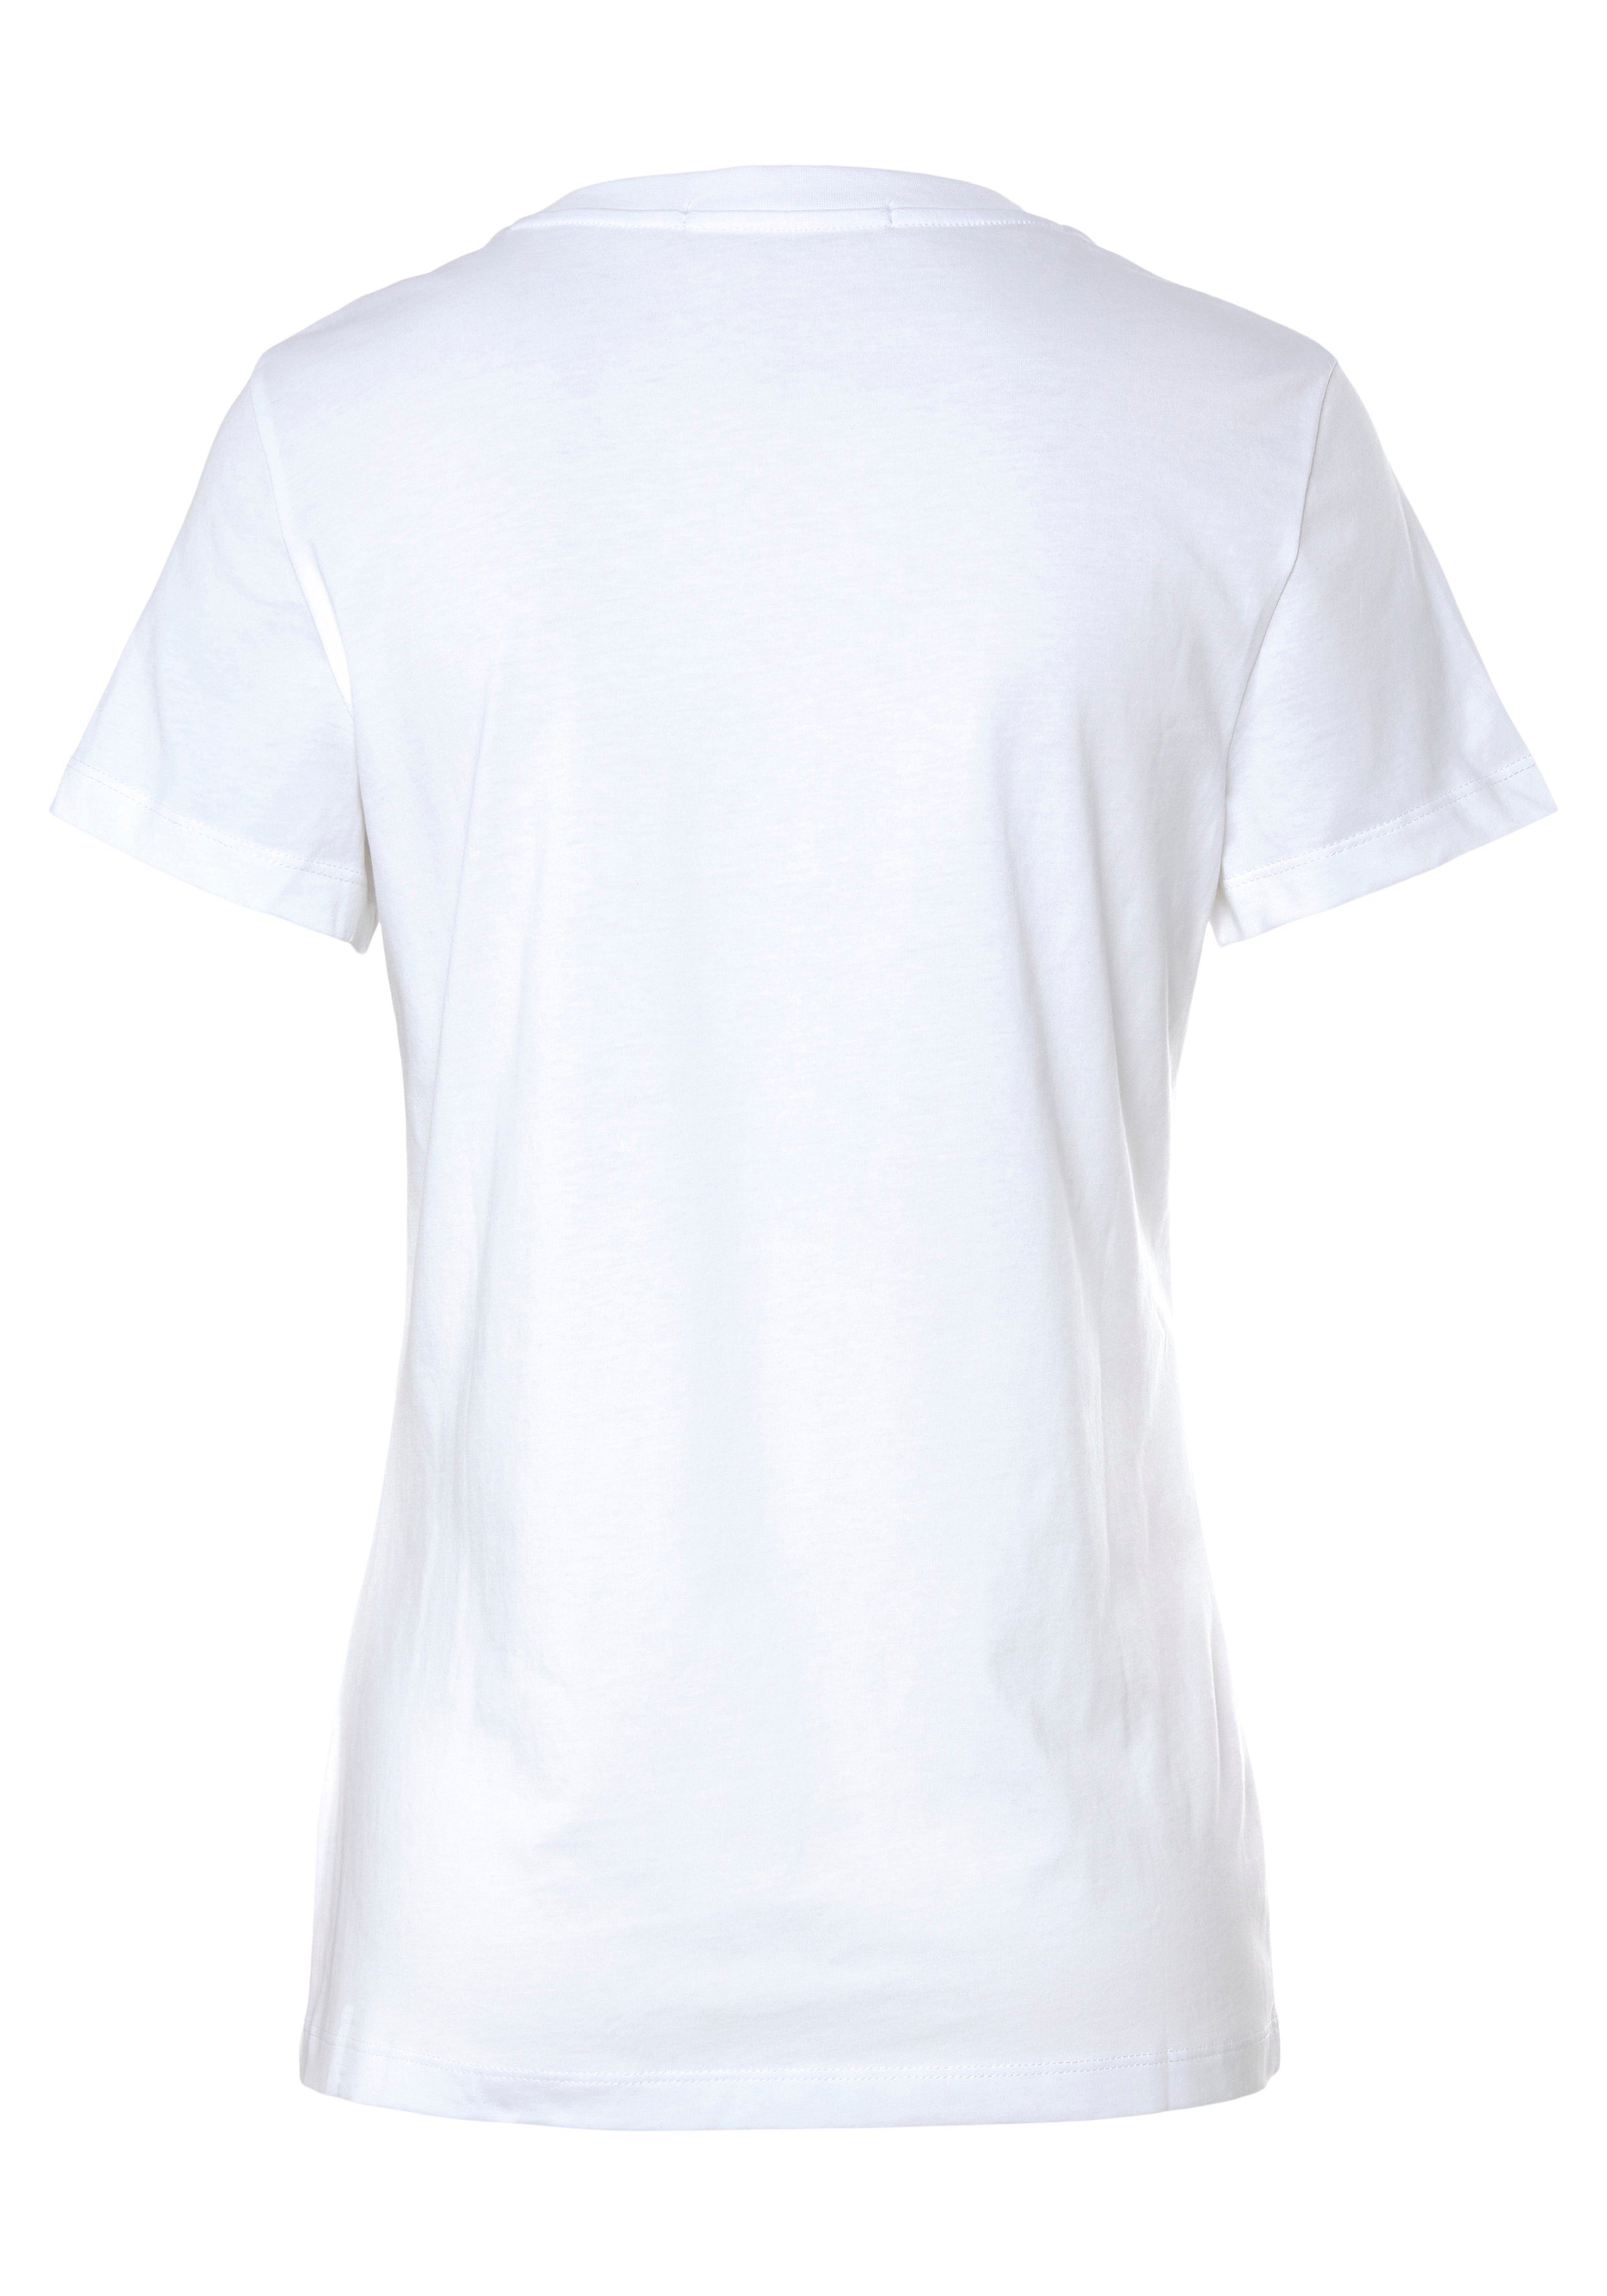 CORE FIT INSTIT Jeans White Bright TEE CK-Logoschriftzug SLIM LOGO Calvin Klein T-Shirt mit